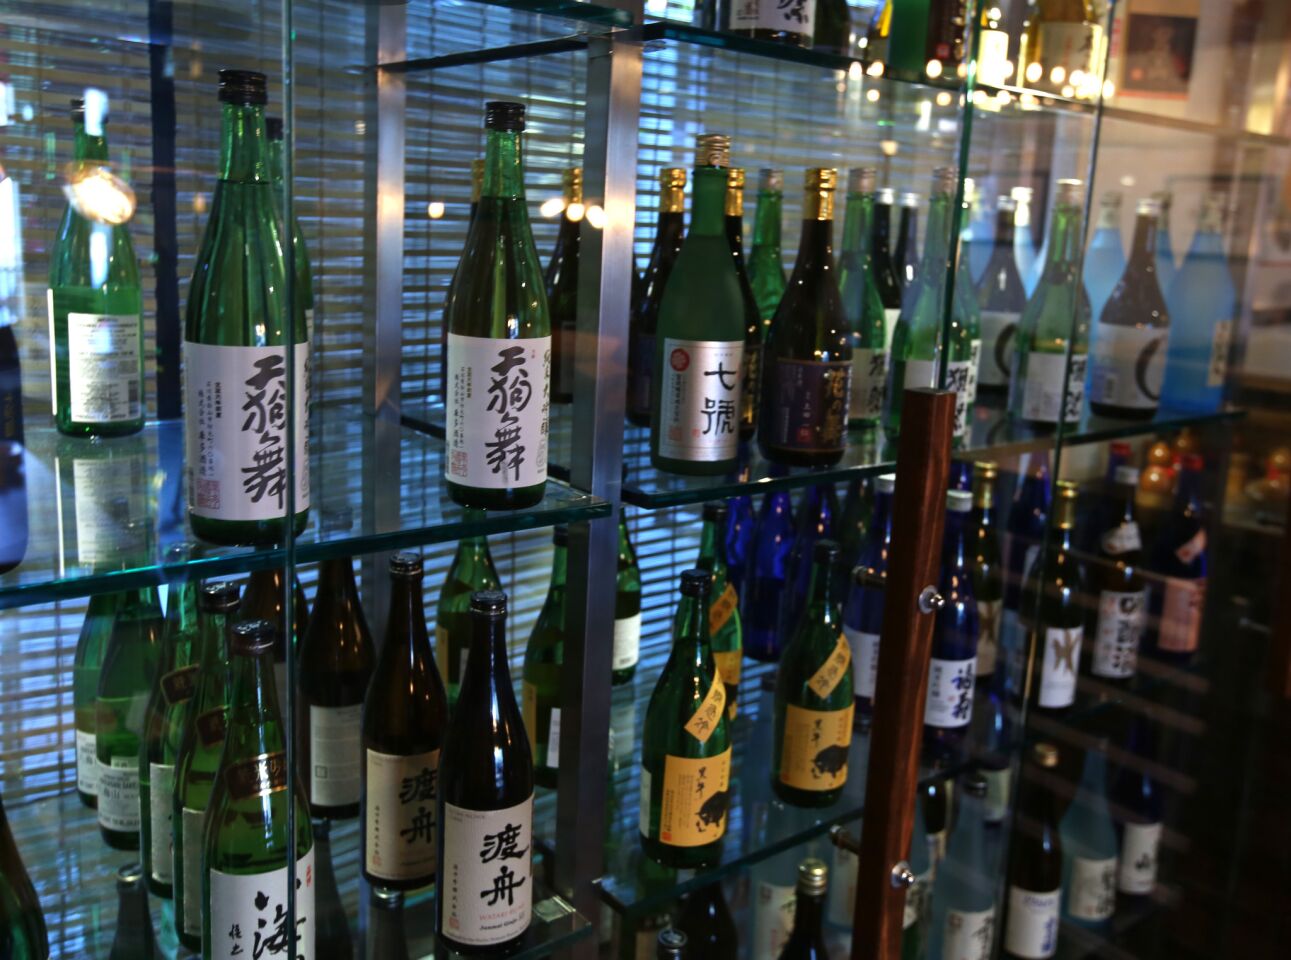 The sake selection at Aburiya Raku.